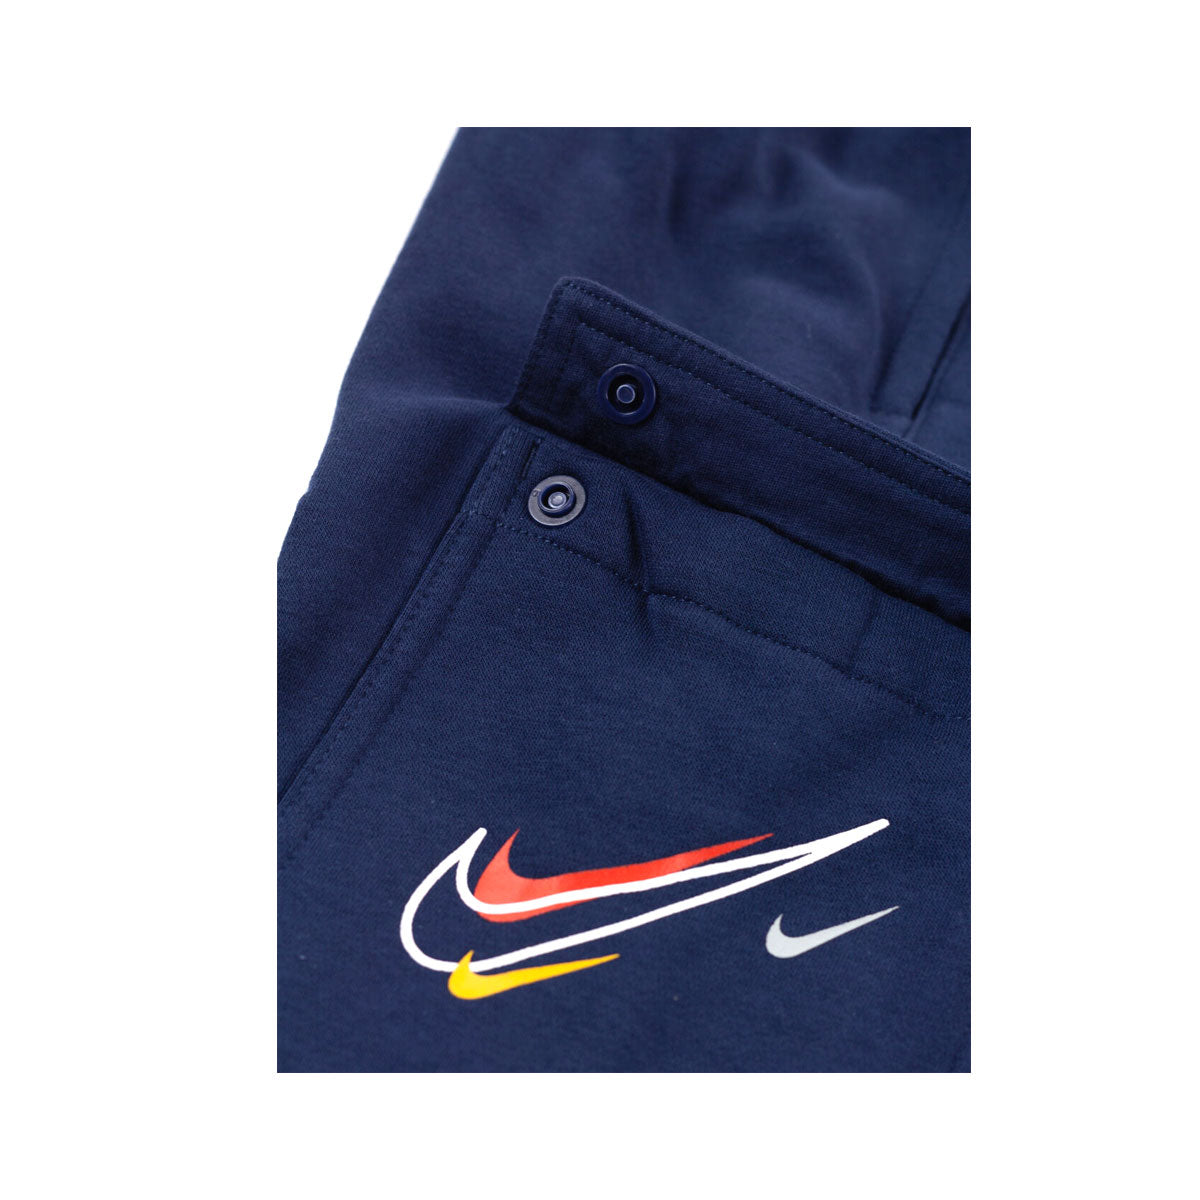 Nike Boys Sportswear Cargo Track Pants